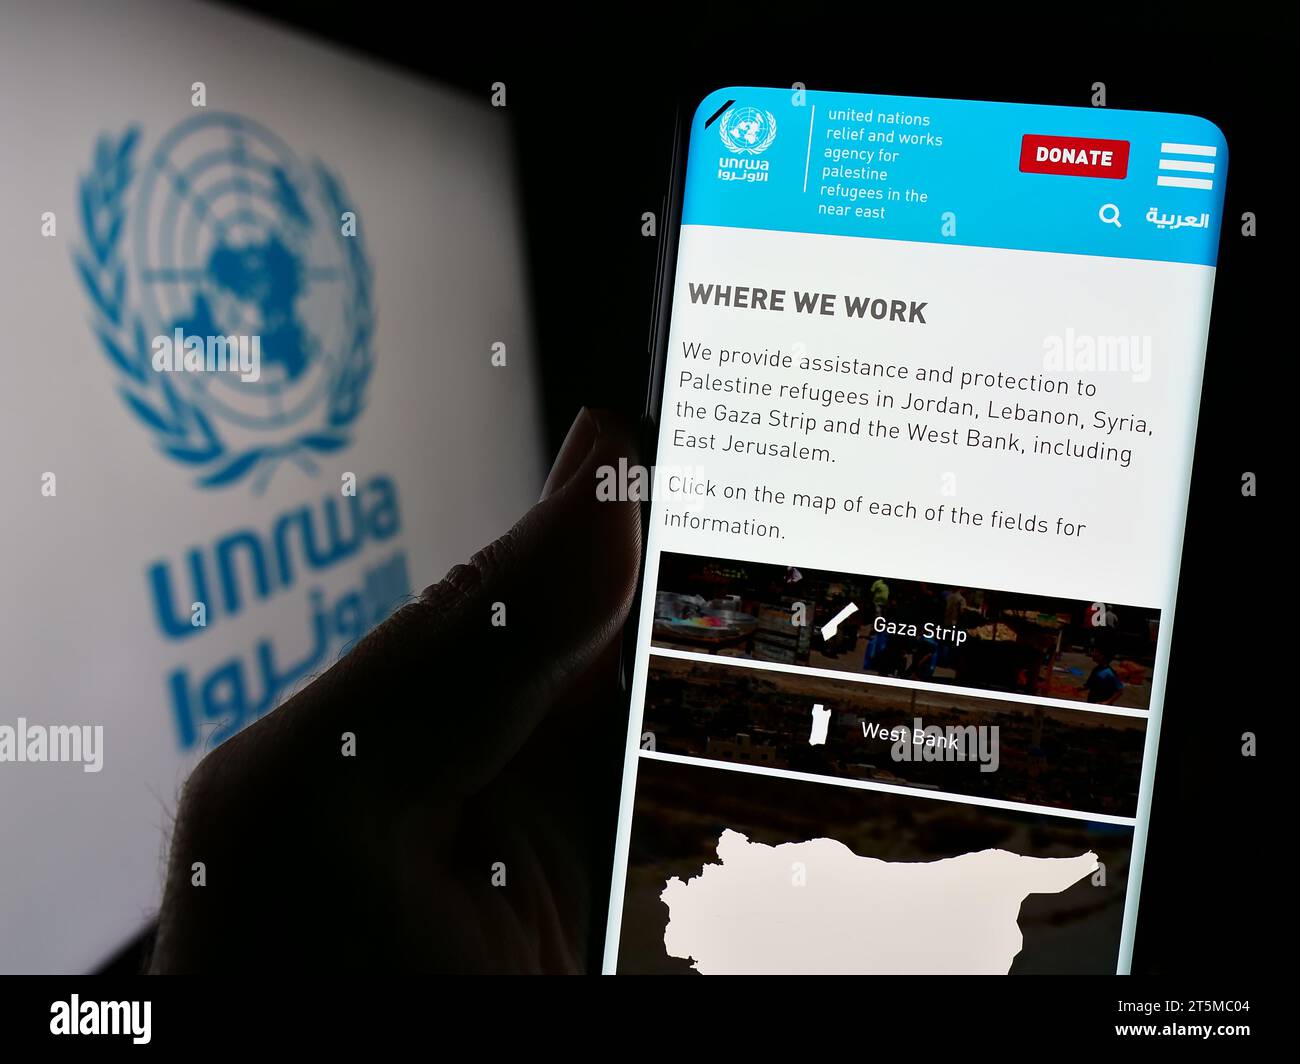 Persona in possesso di un cellulare con la pagina web dell'agenzia delle Nazioni Unite per i rifugiati plalestini UNRWA davanti al logo. Concentrarsi sul centro del display del telefono. Foto Stock